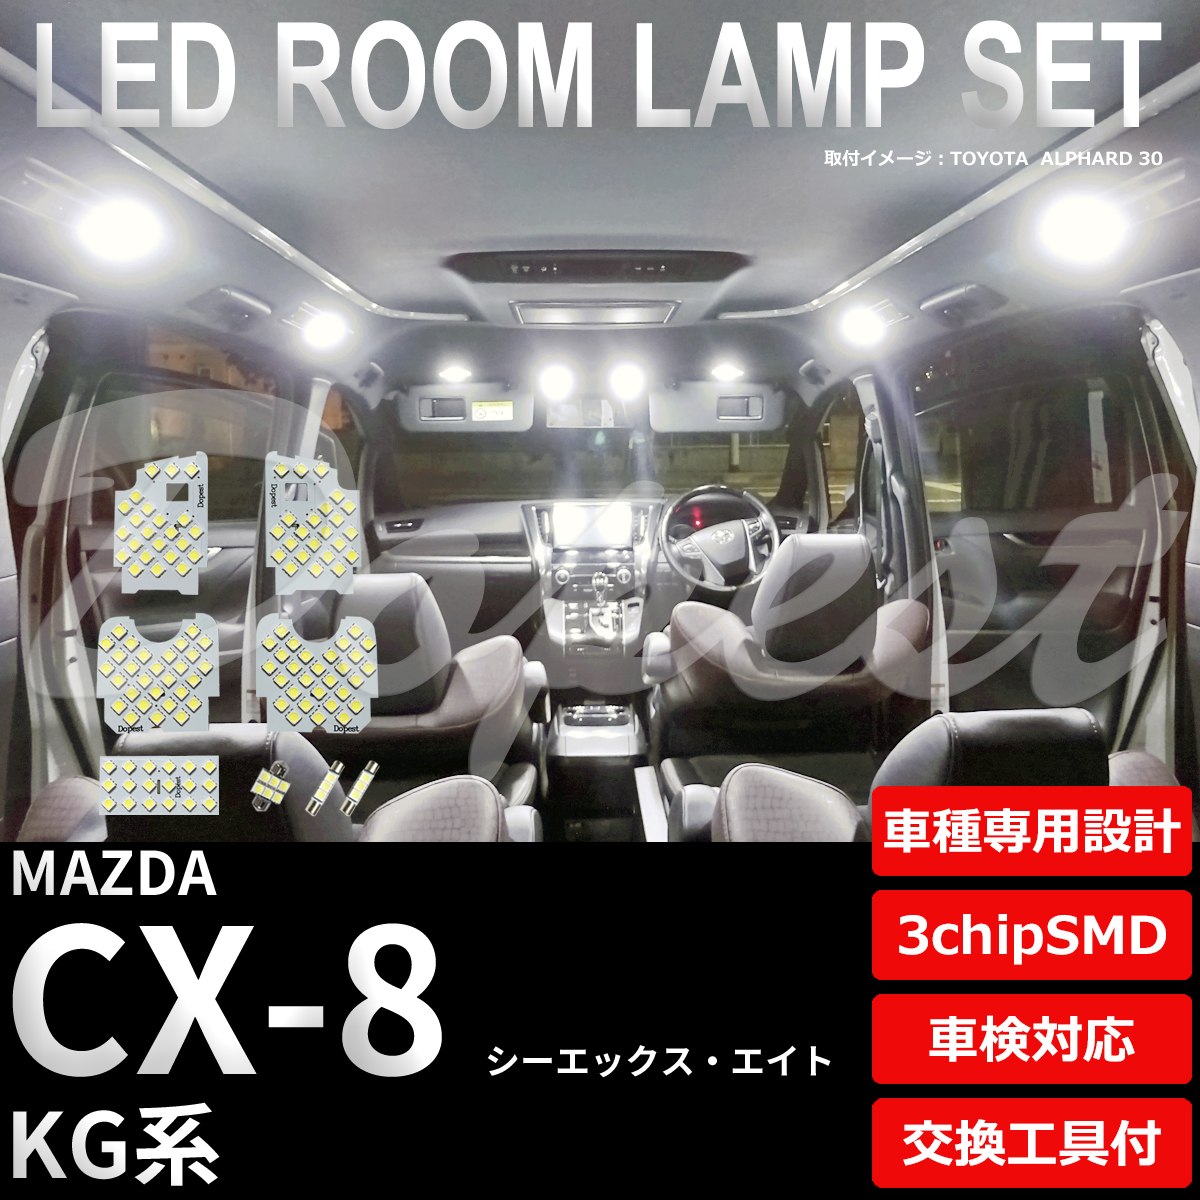 CX-8 LEDルームランプセット KG系 車内 車種別 車 室内